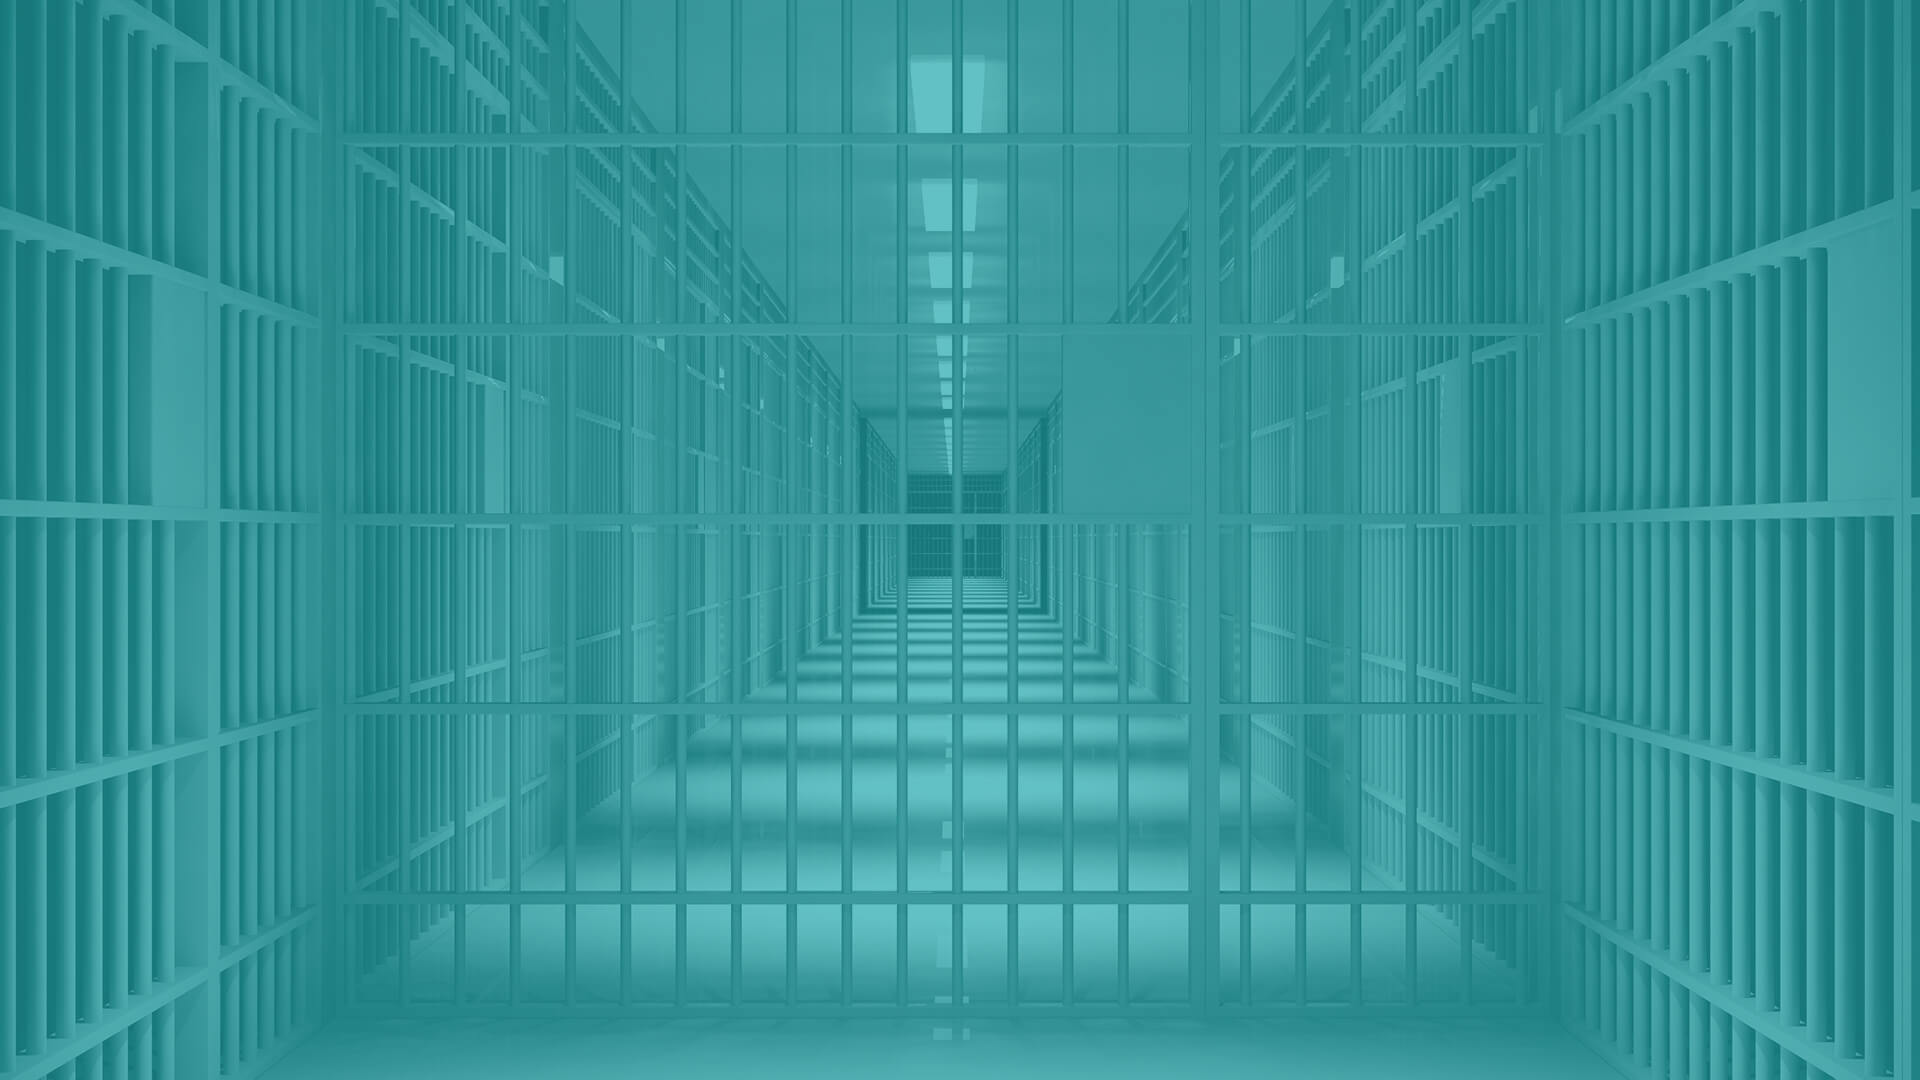 “jail